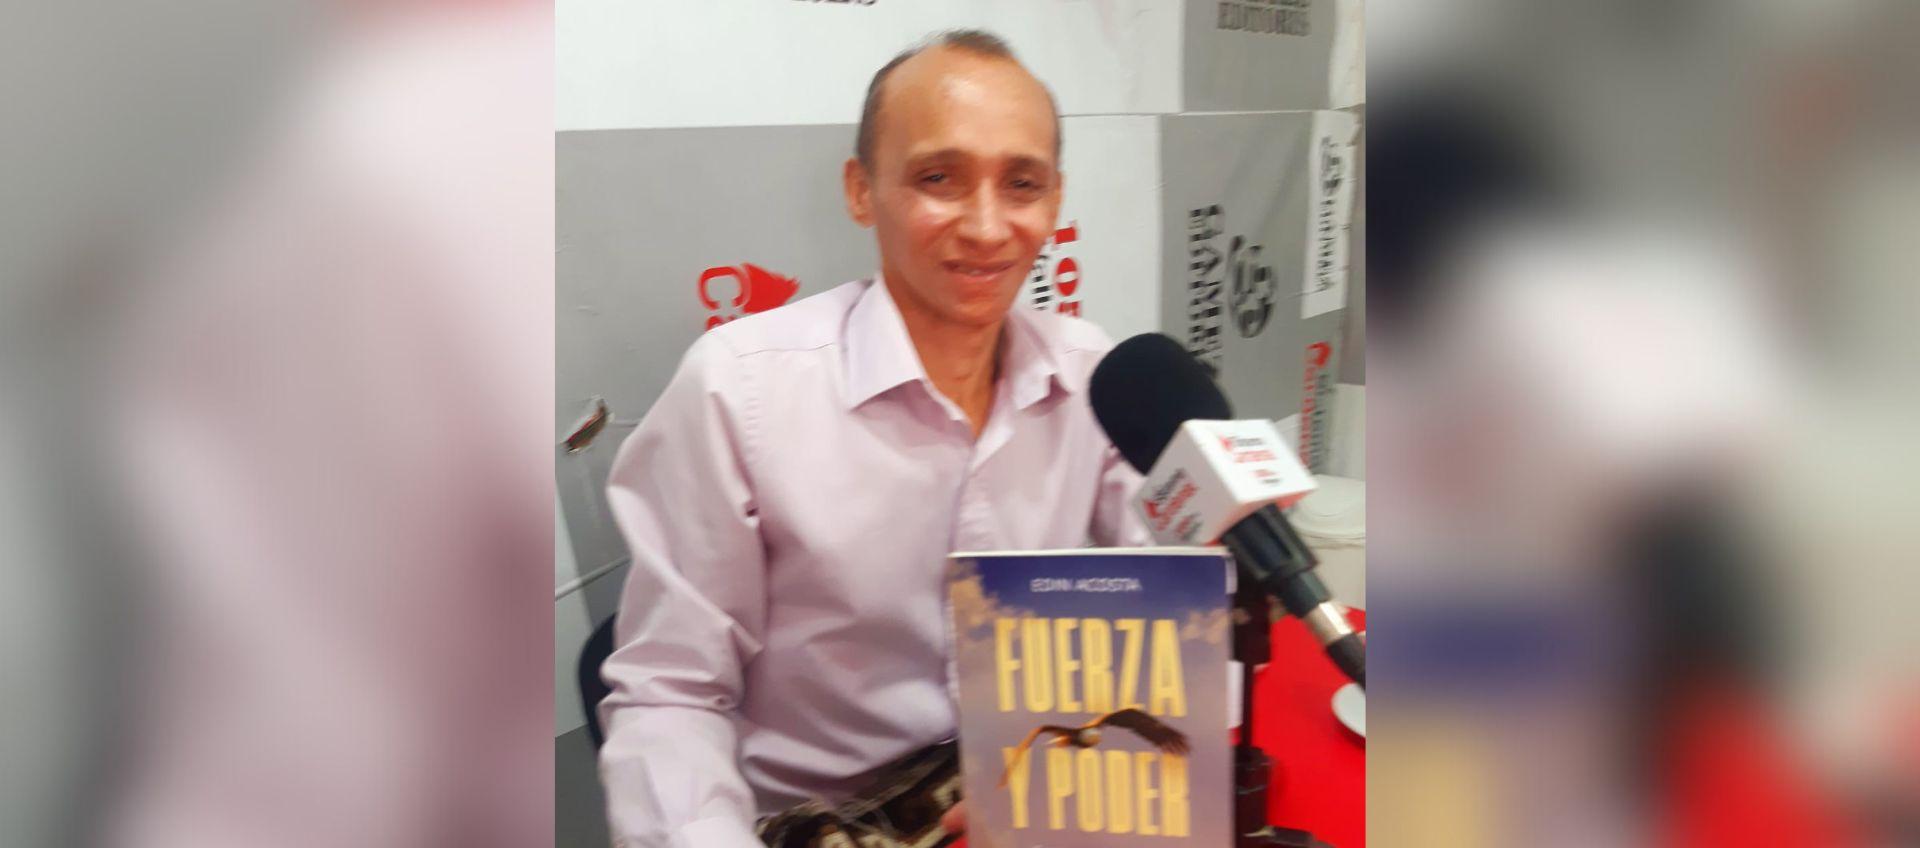 Edin Acosta con su libro 'Fuerza y poder'.